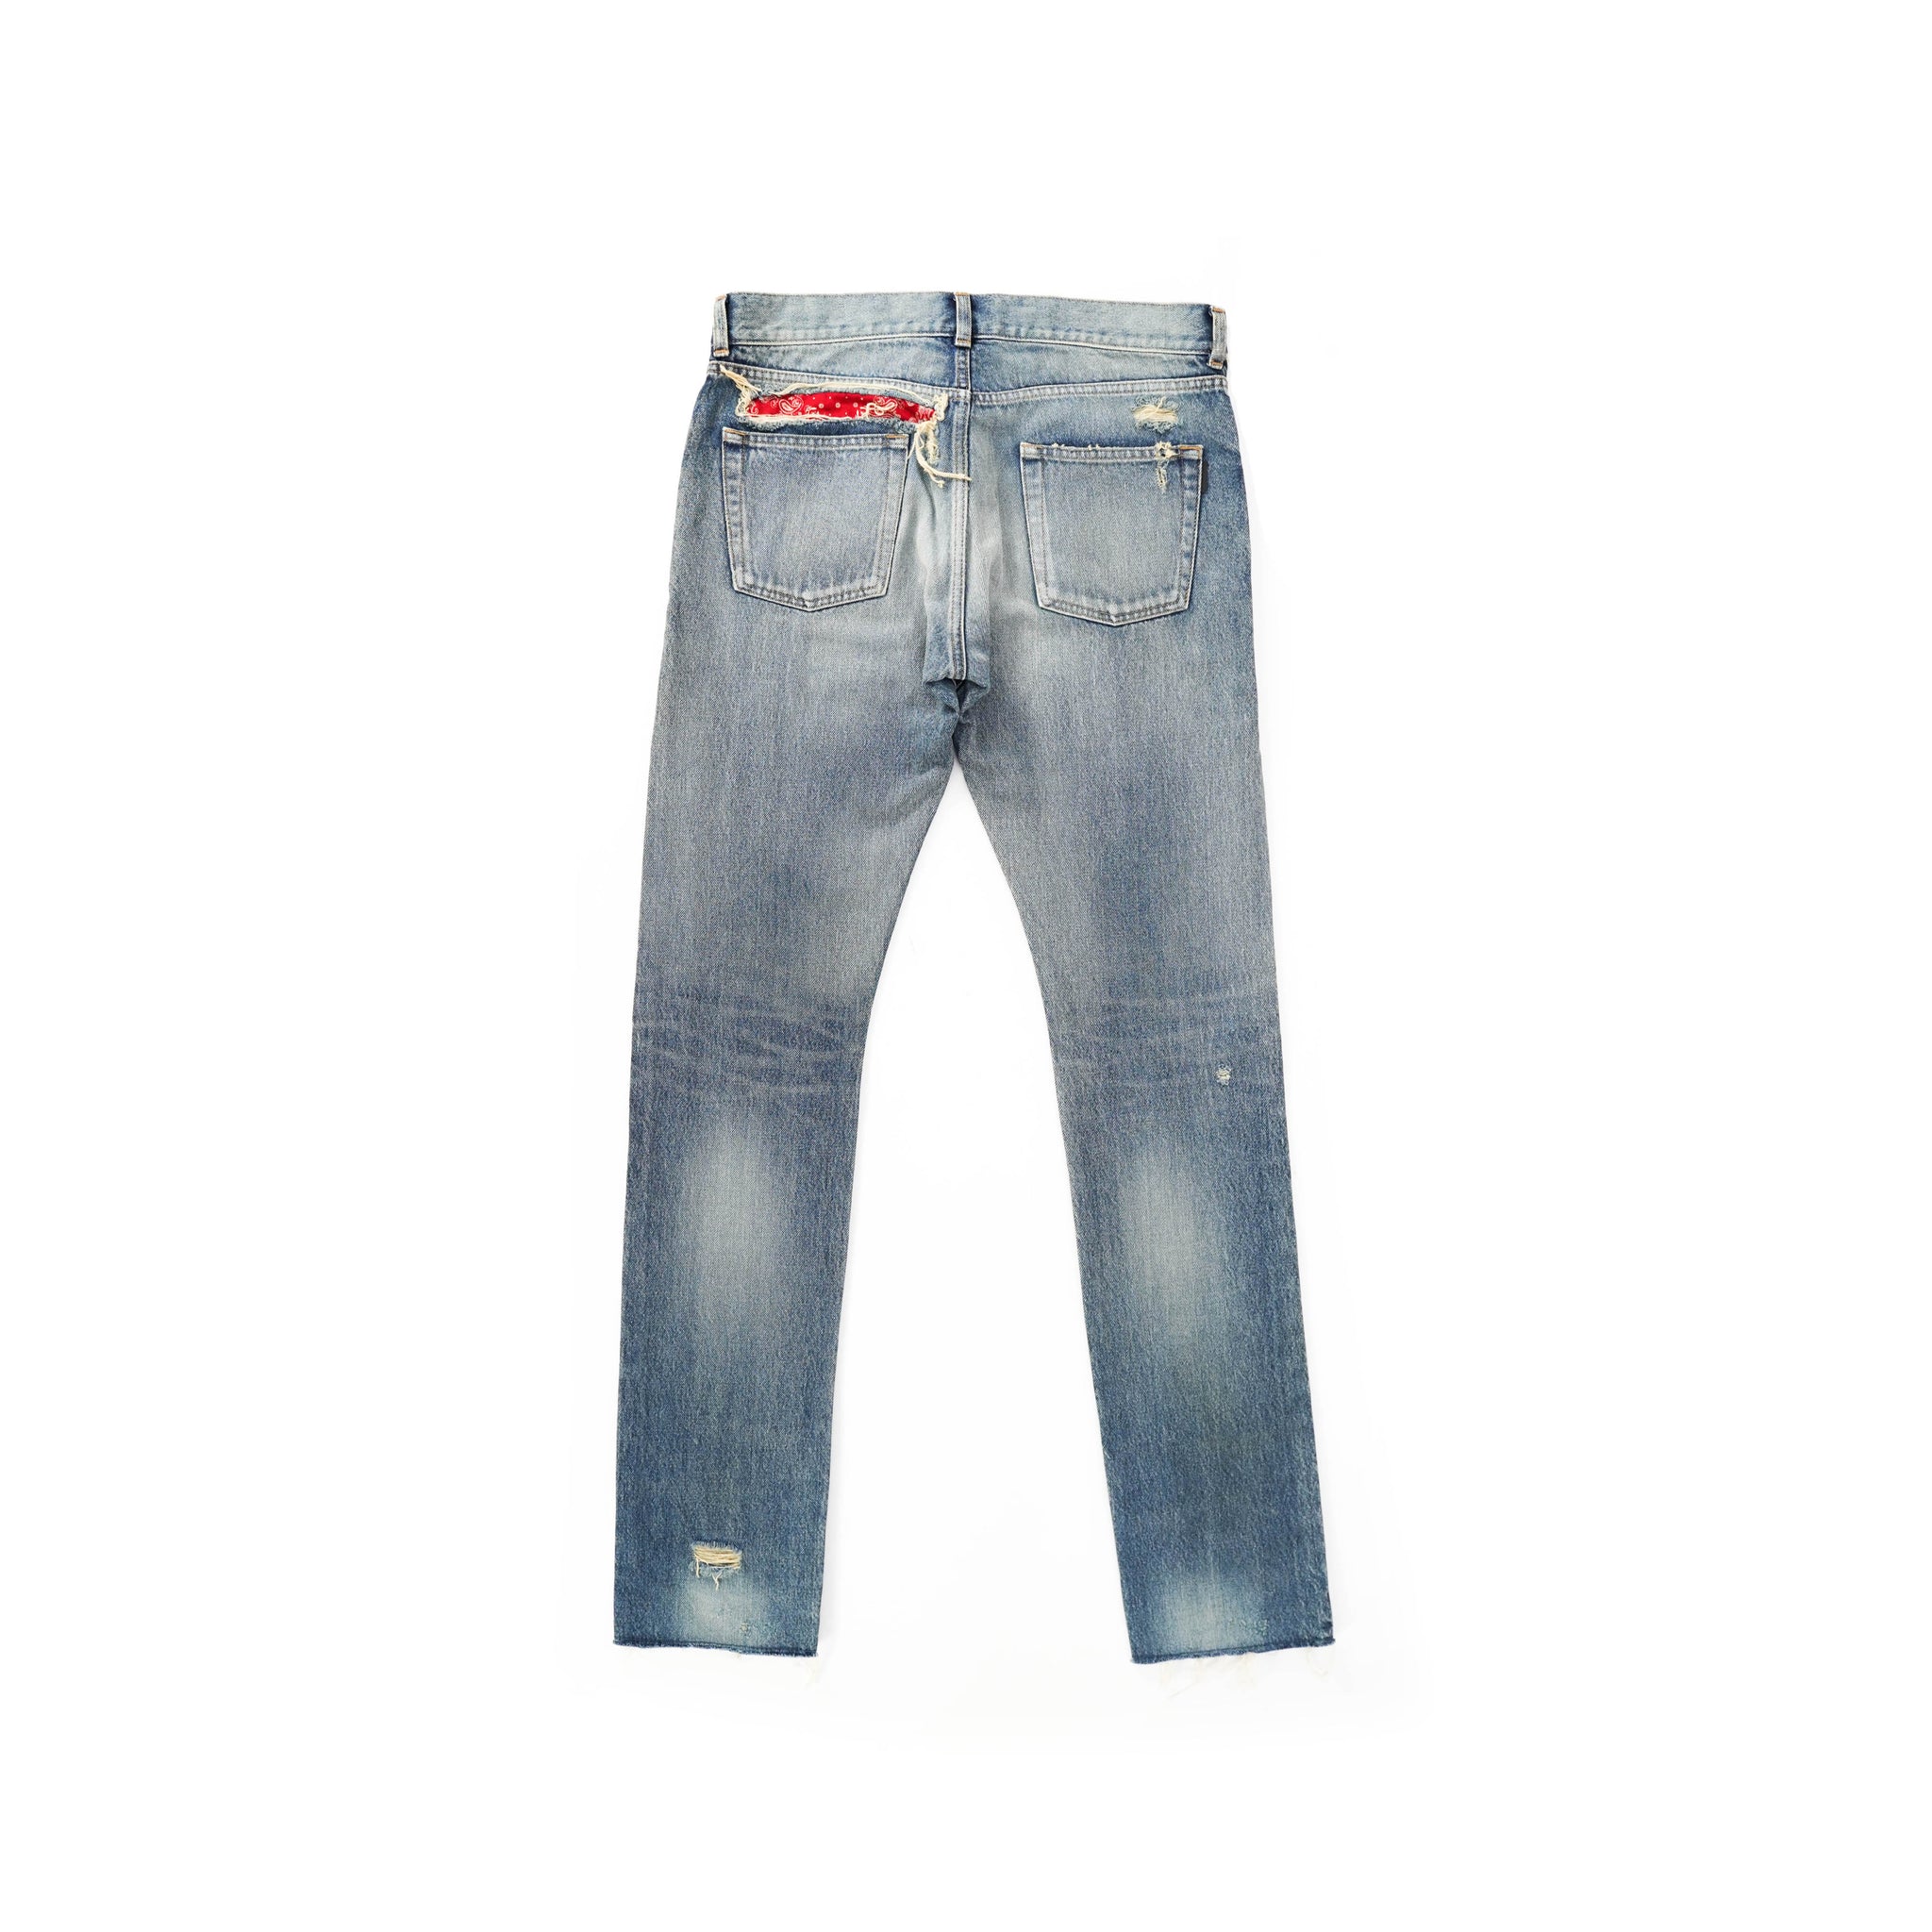 Distressed Bandana – Jeans Backyardarchive